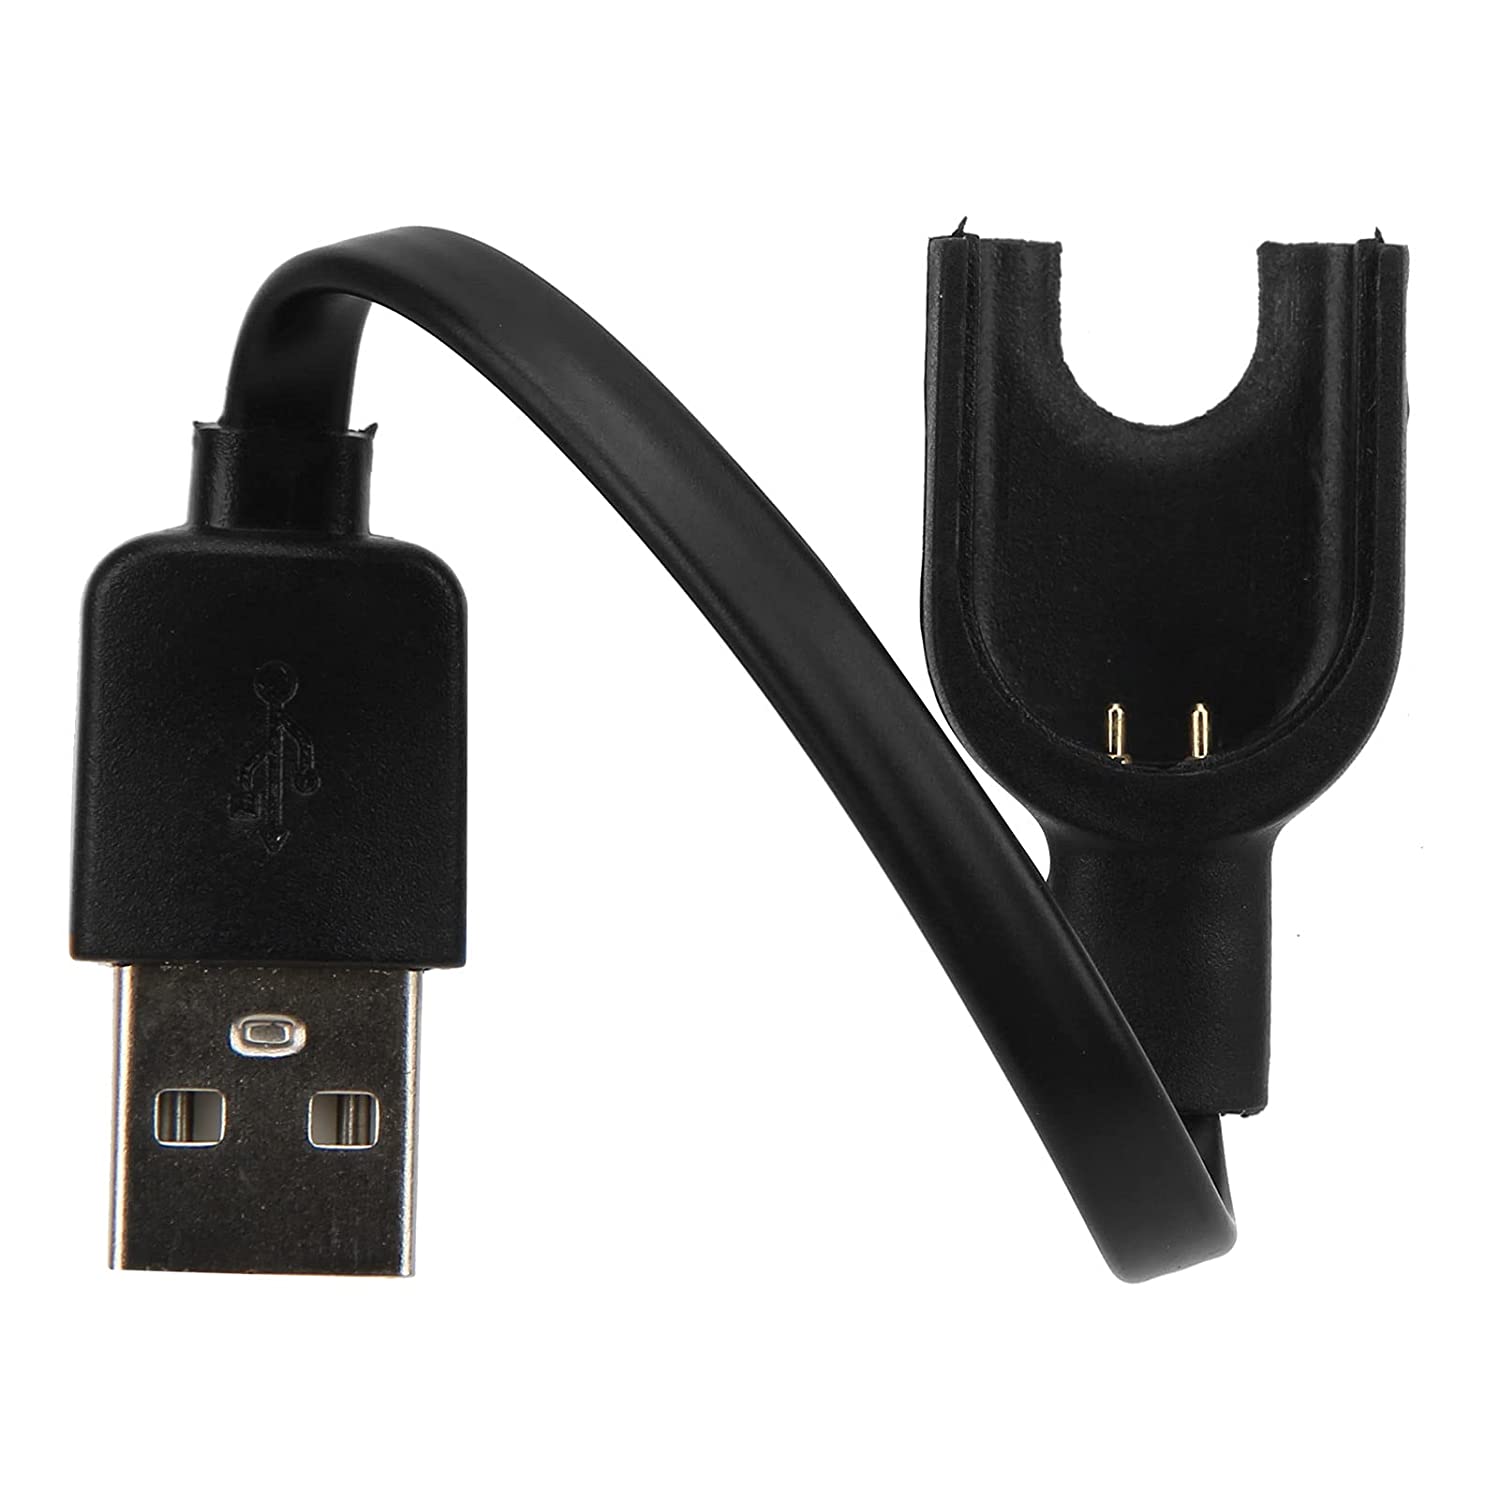 Cable USB carga y sincronización | Compatible con Xiaomi Mi Band 3 | Cargador Xiaomi Mi Band 3 | Cable reemplazo Xiaomi Mi band 3 | Longitud 15 cm | Negro